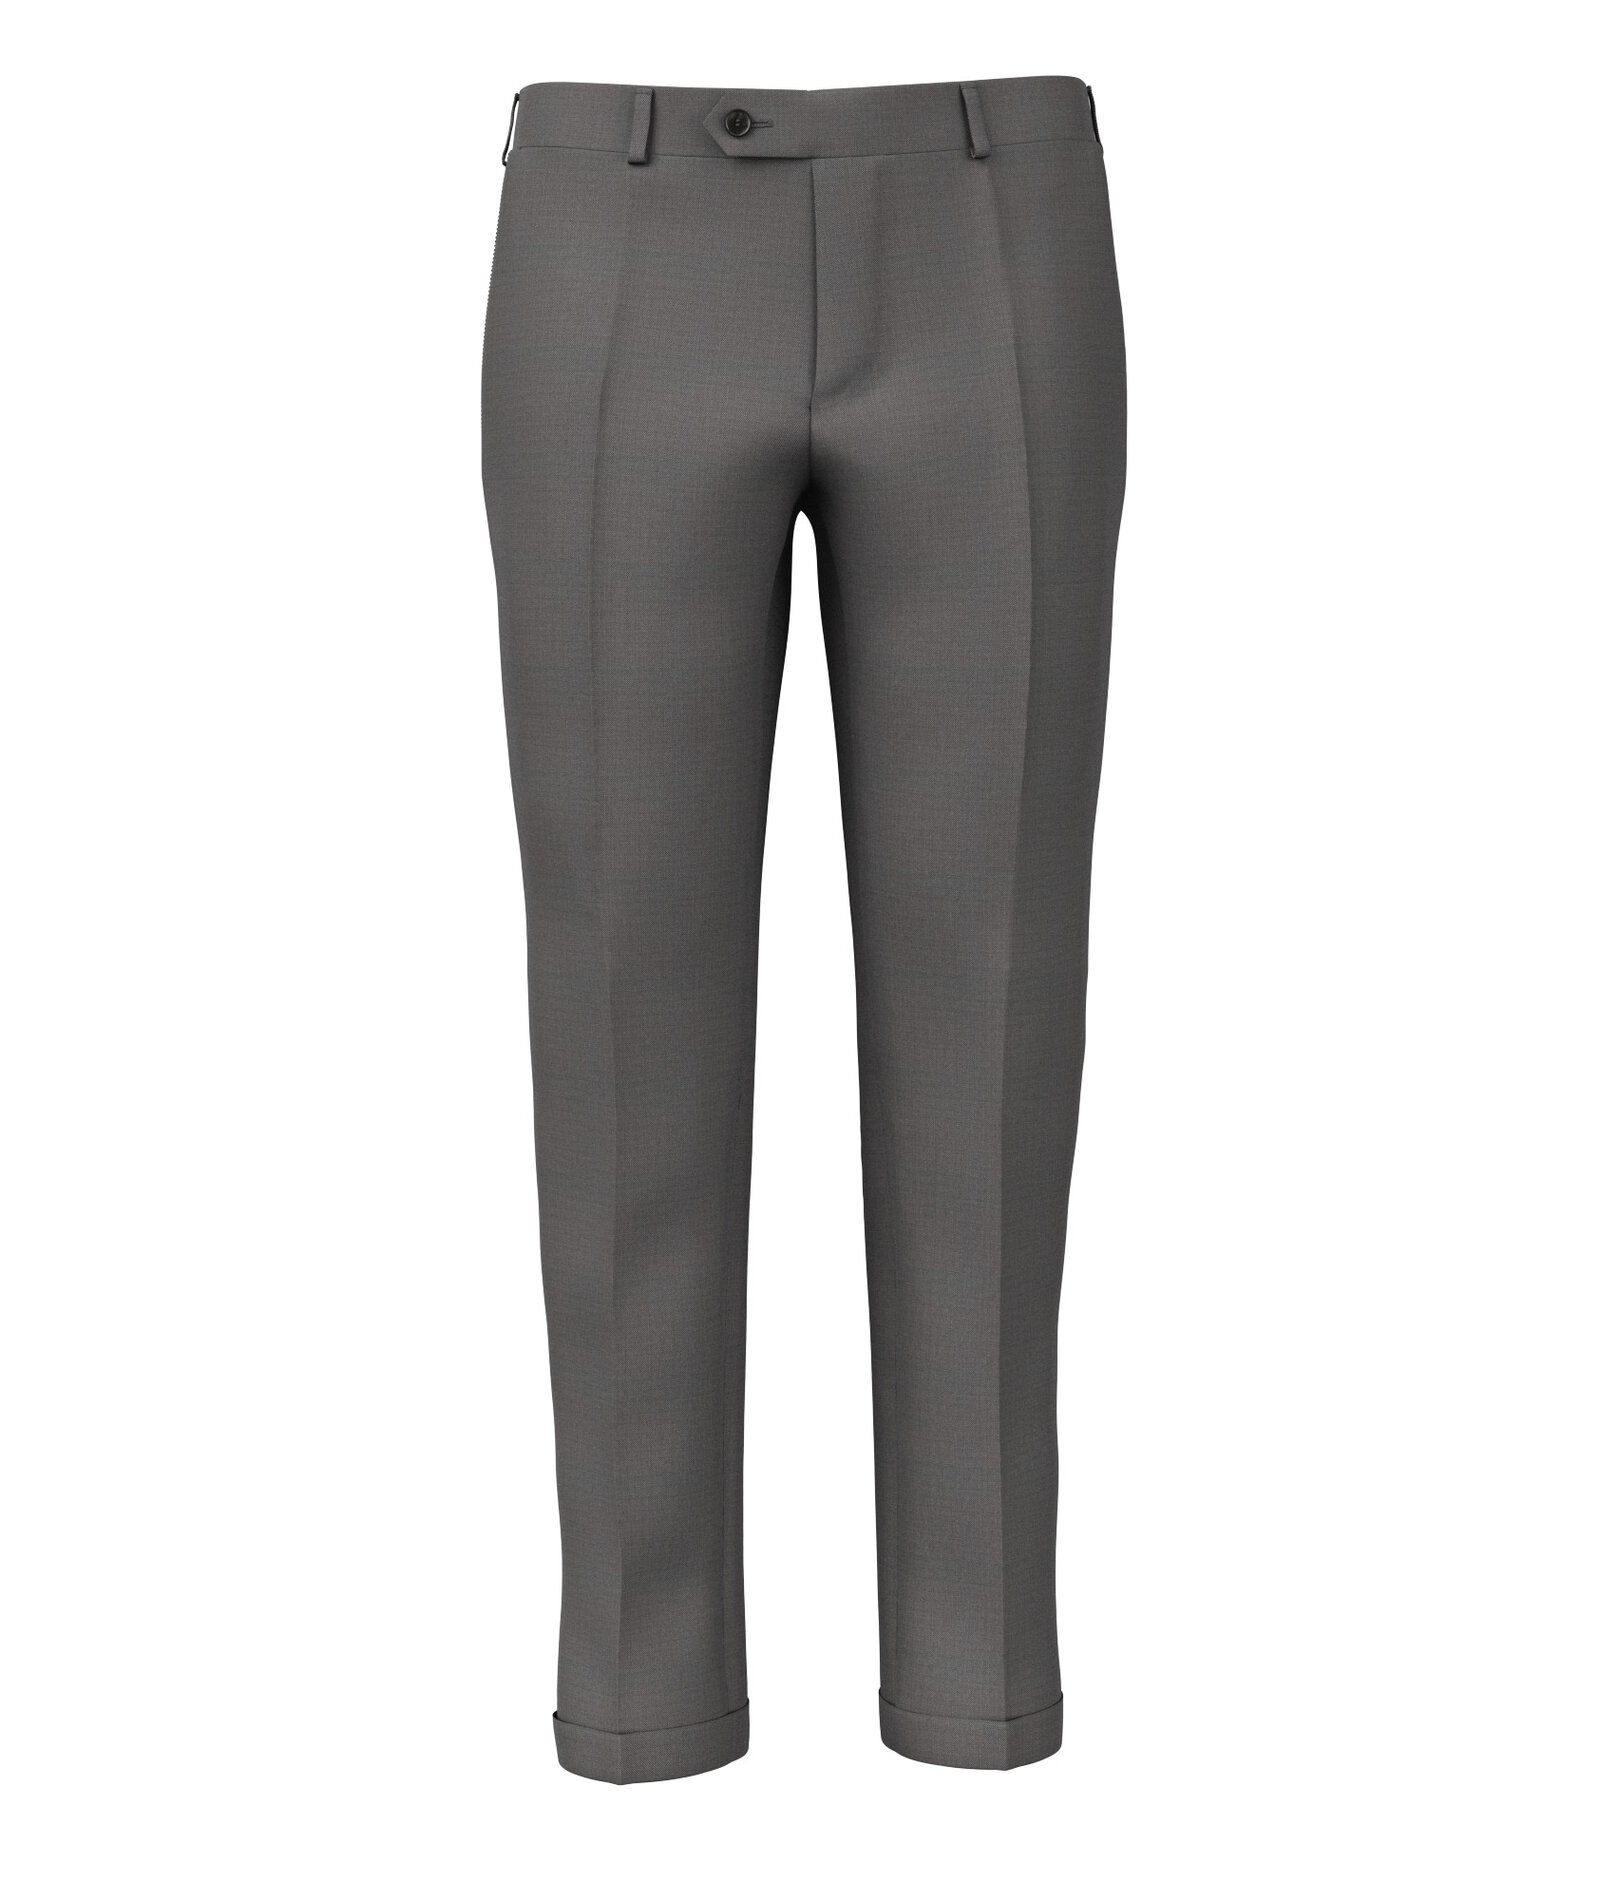 Image of Pantaloni da uomo su misura, Reda, Grigio 100% Lana Merino, Quattro Stagioni | Lanieri